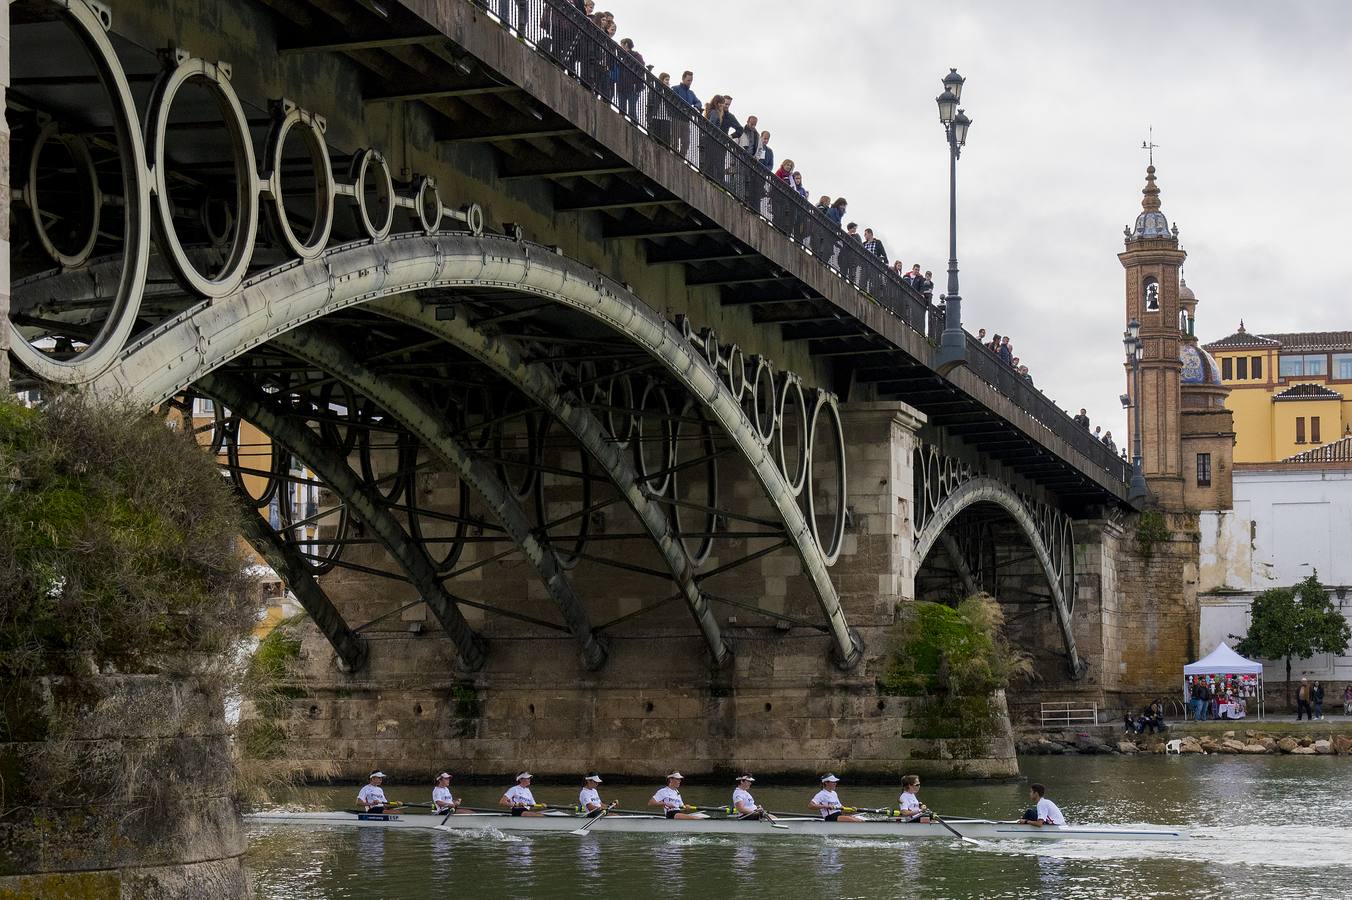 En poco más de 18 minutos, el bote del Betis completó los más de seis kiómetros que separan el Puente del Alamillo hasta el Acuario de Sevilla, con lo que recorta (30-22) la ventaja que aún mantienen los sevillistas en el palmarés histórico